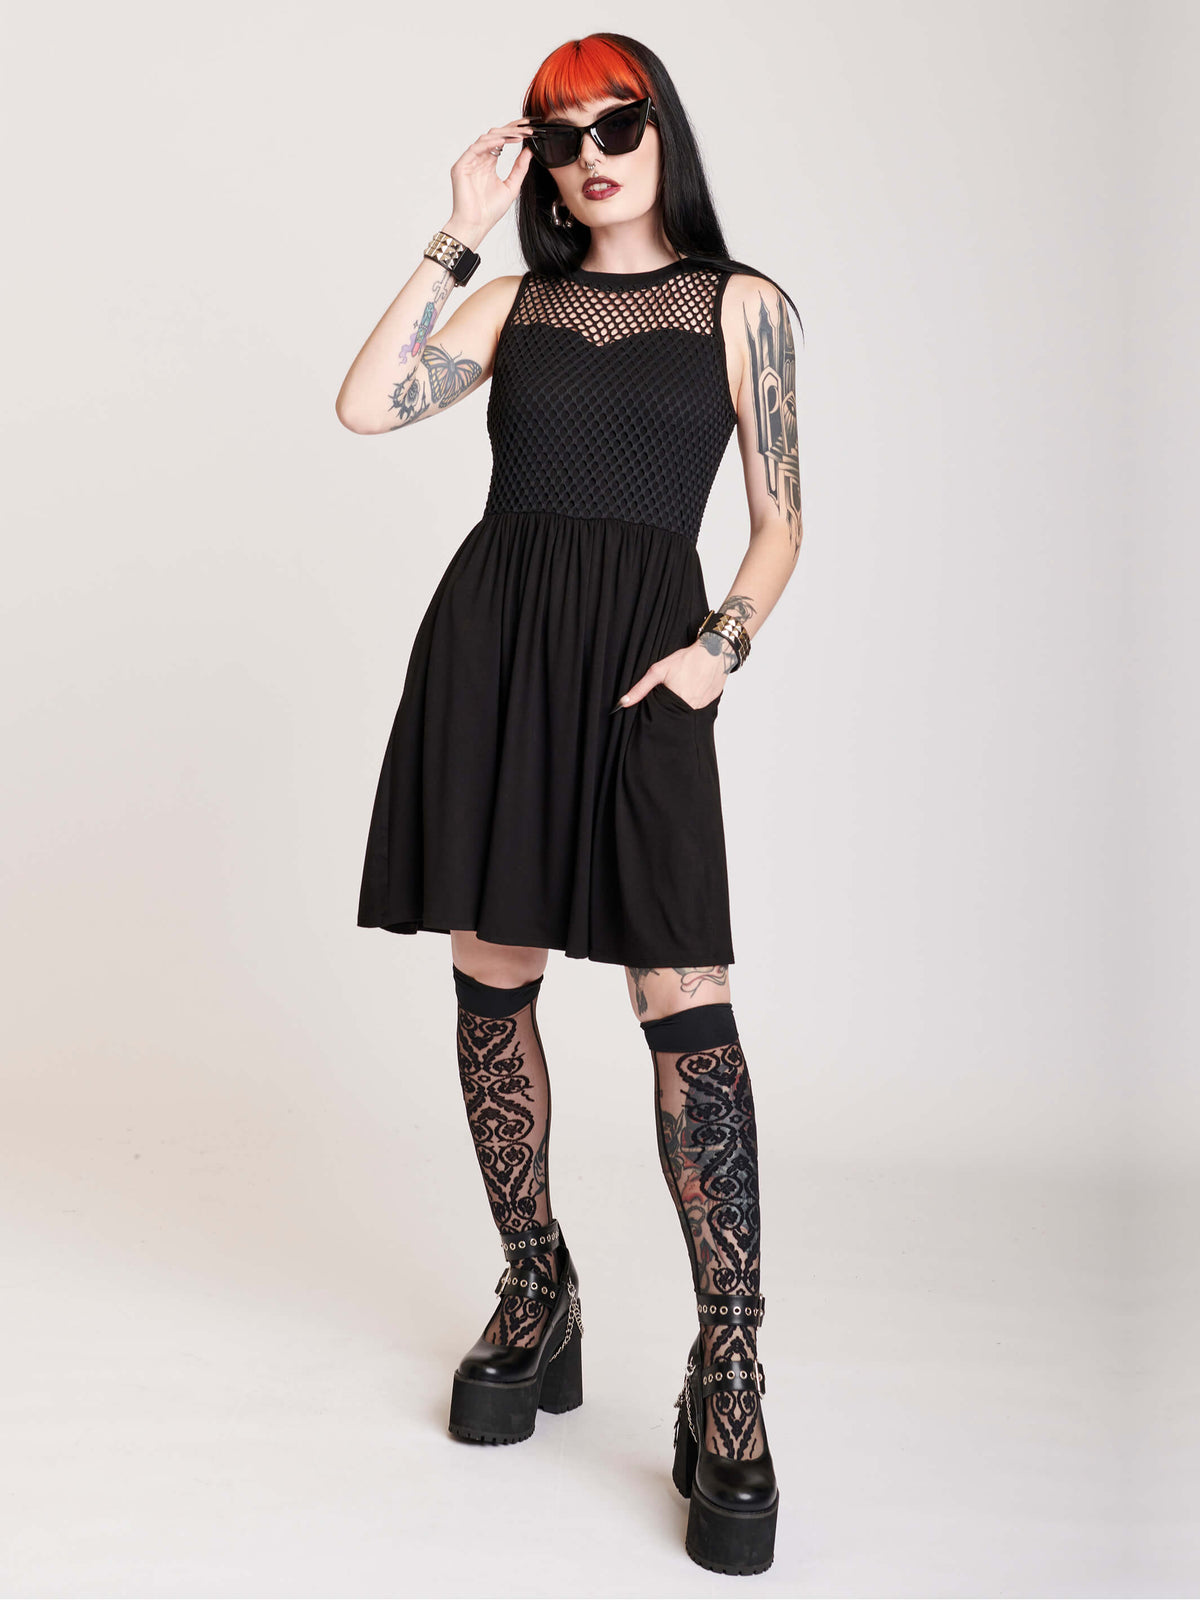 Fishnet black dress